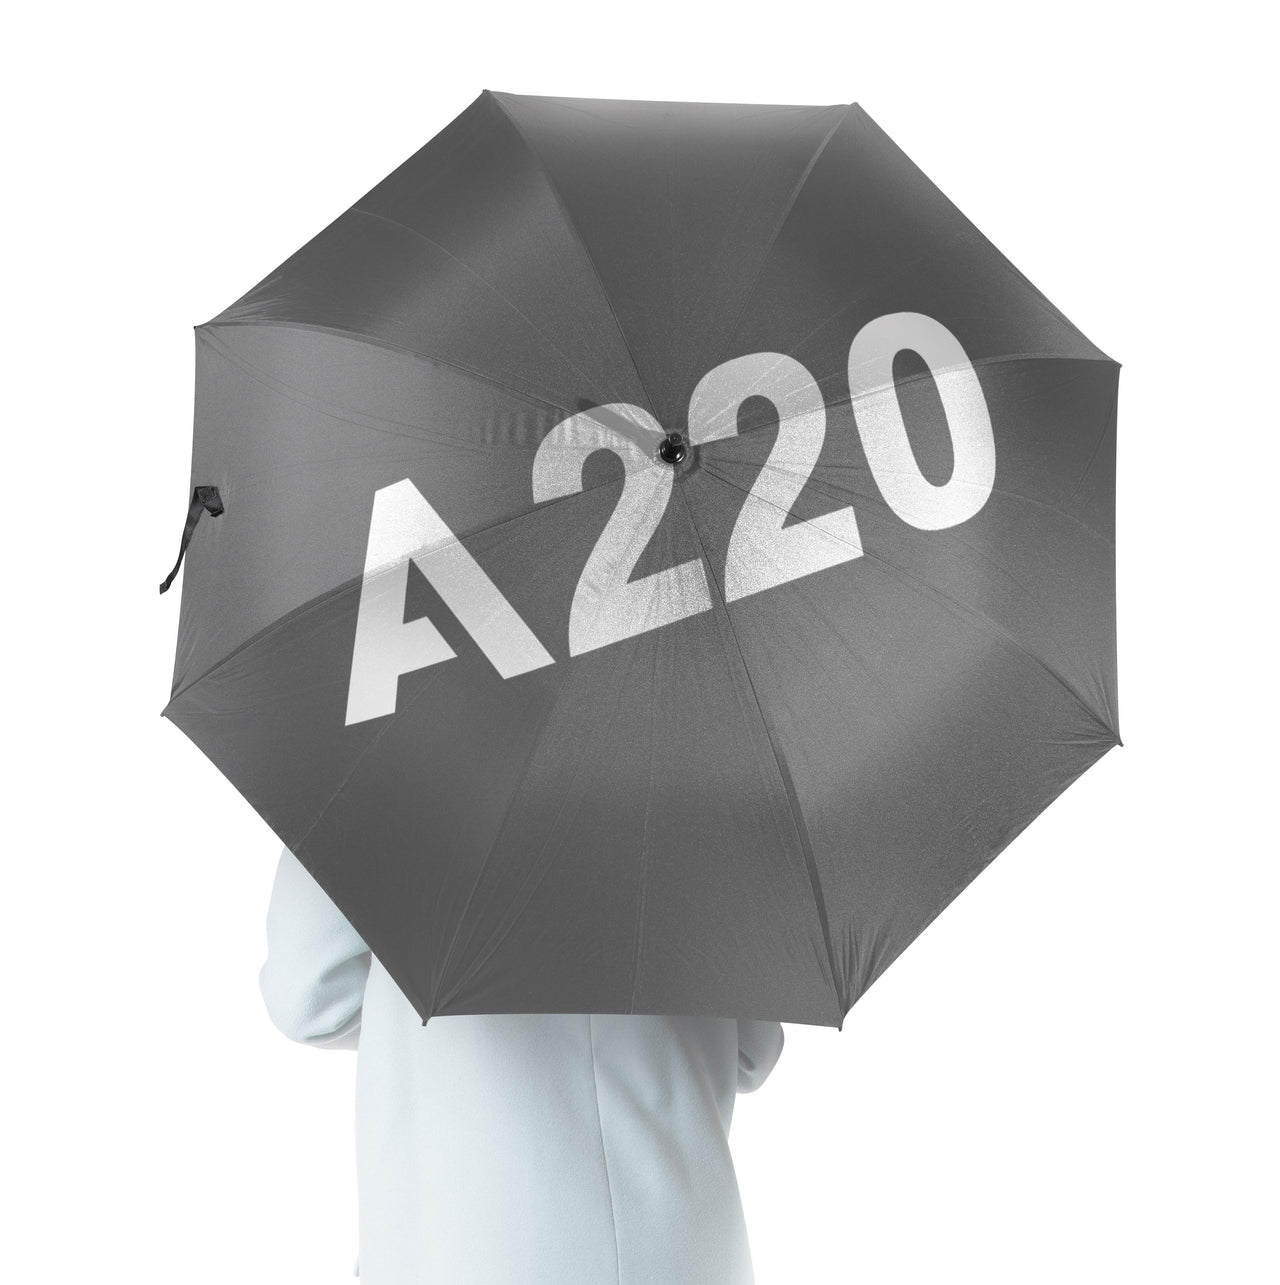 A220 Flat Text Designed Umbrella